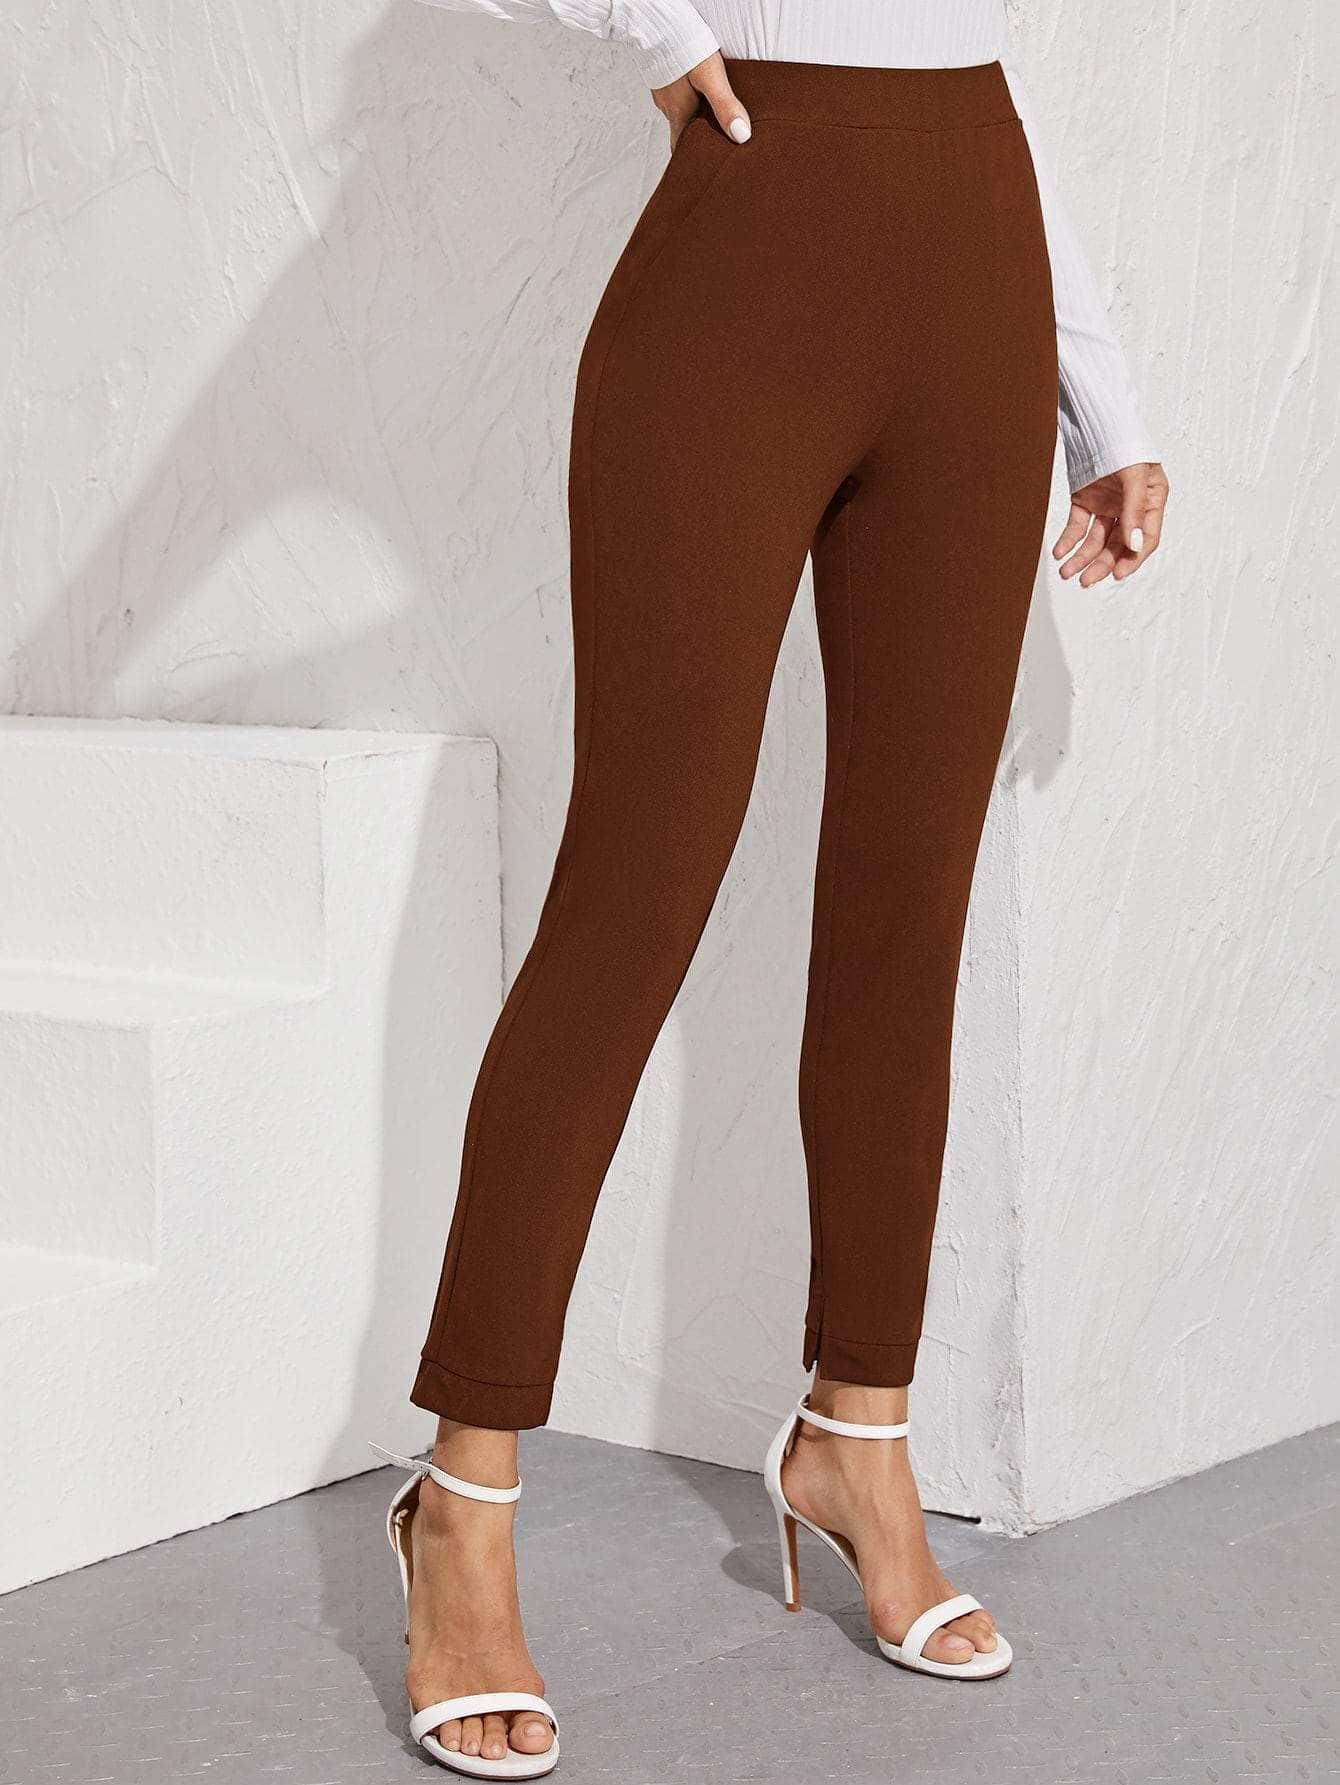 Marron Chocolate / XL pantalones bajo con abertura de cintura elástica